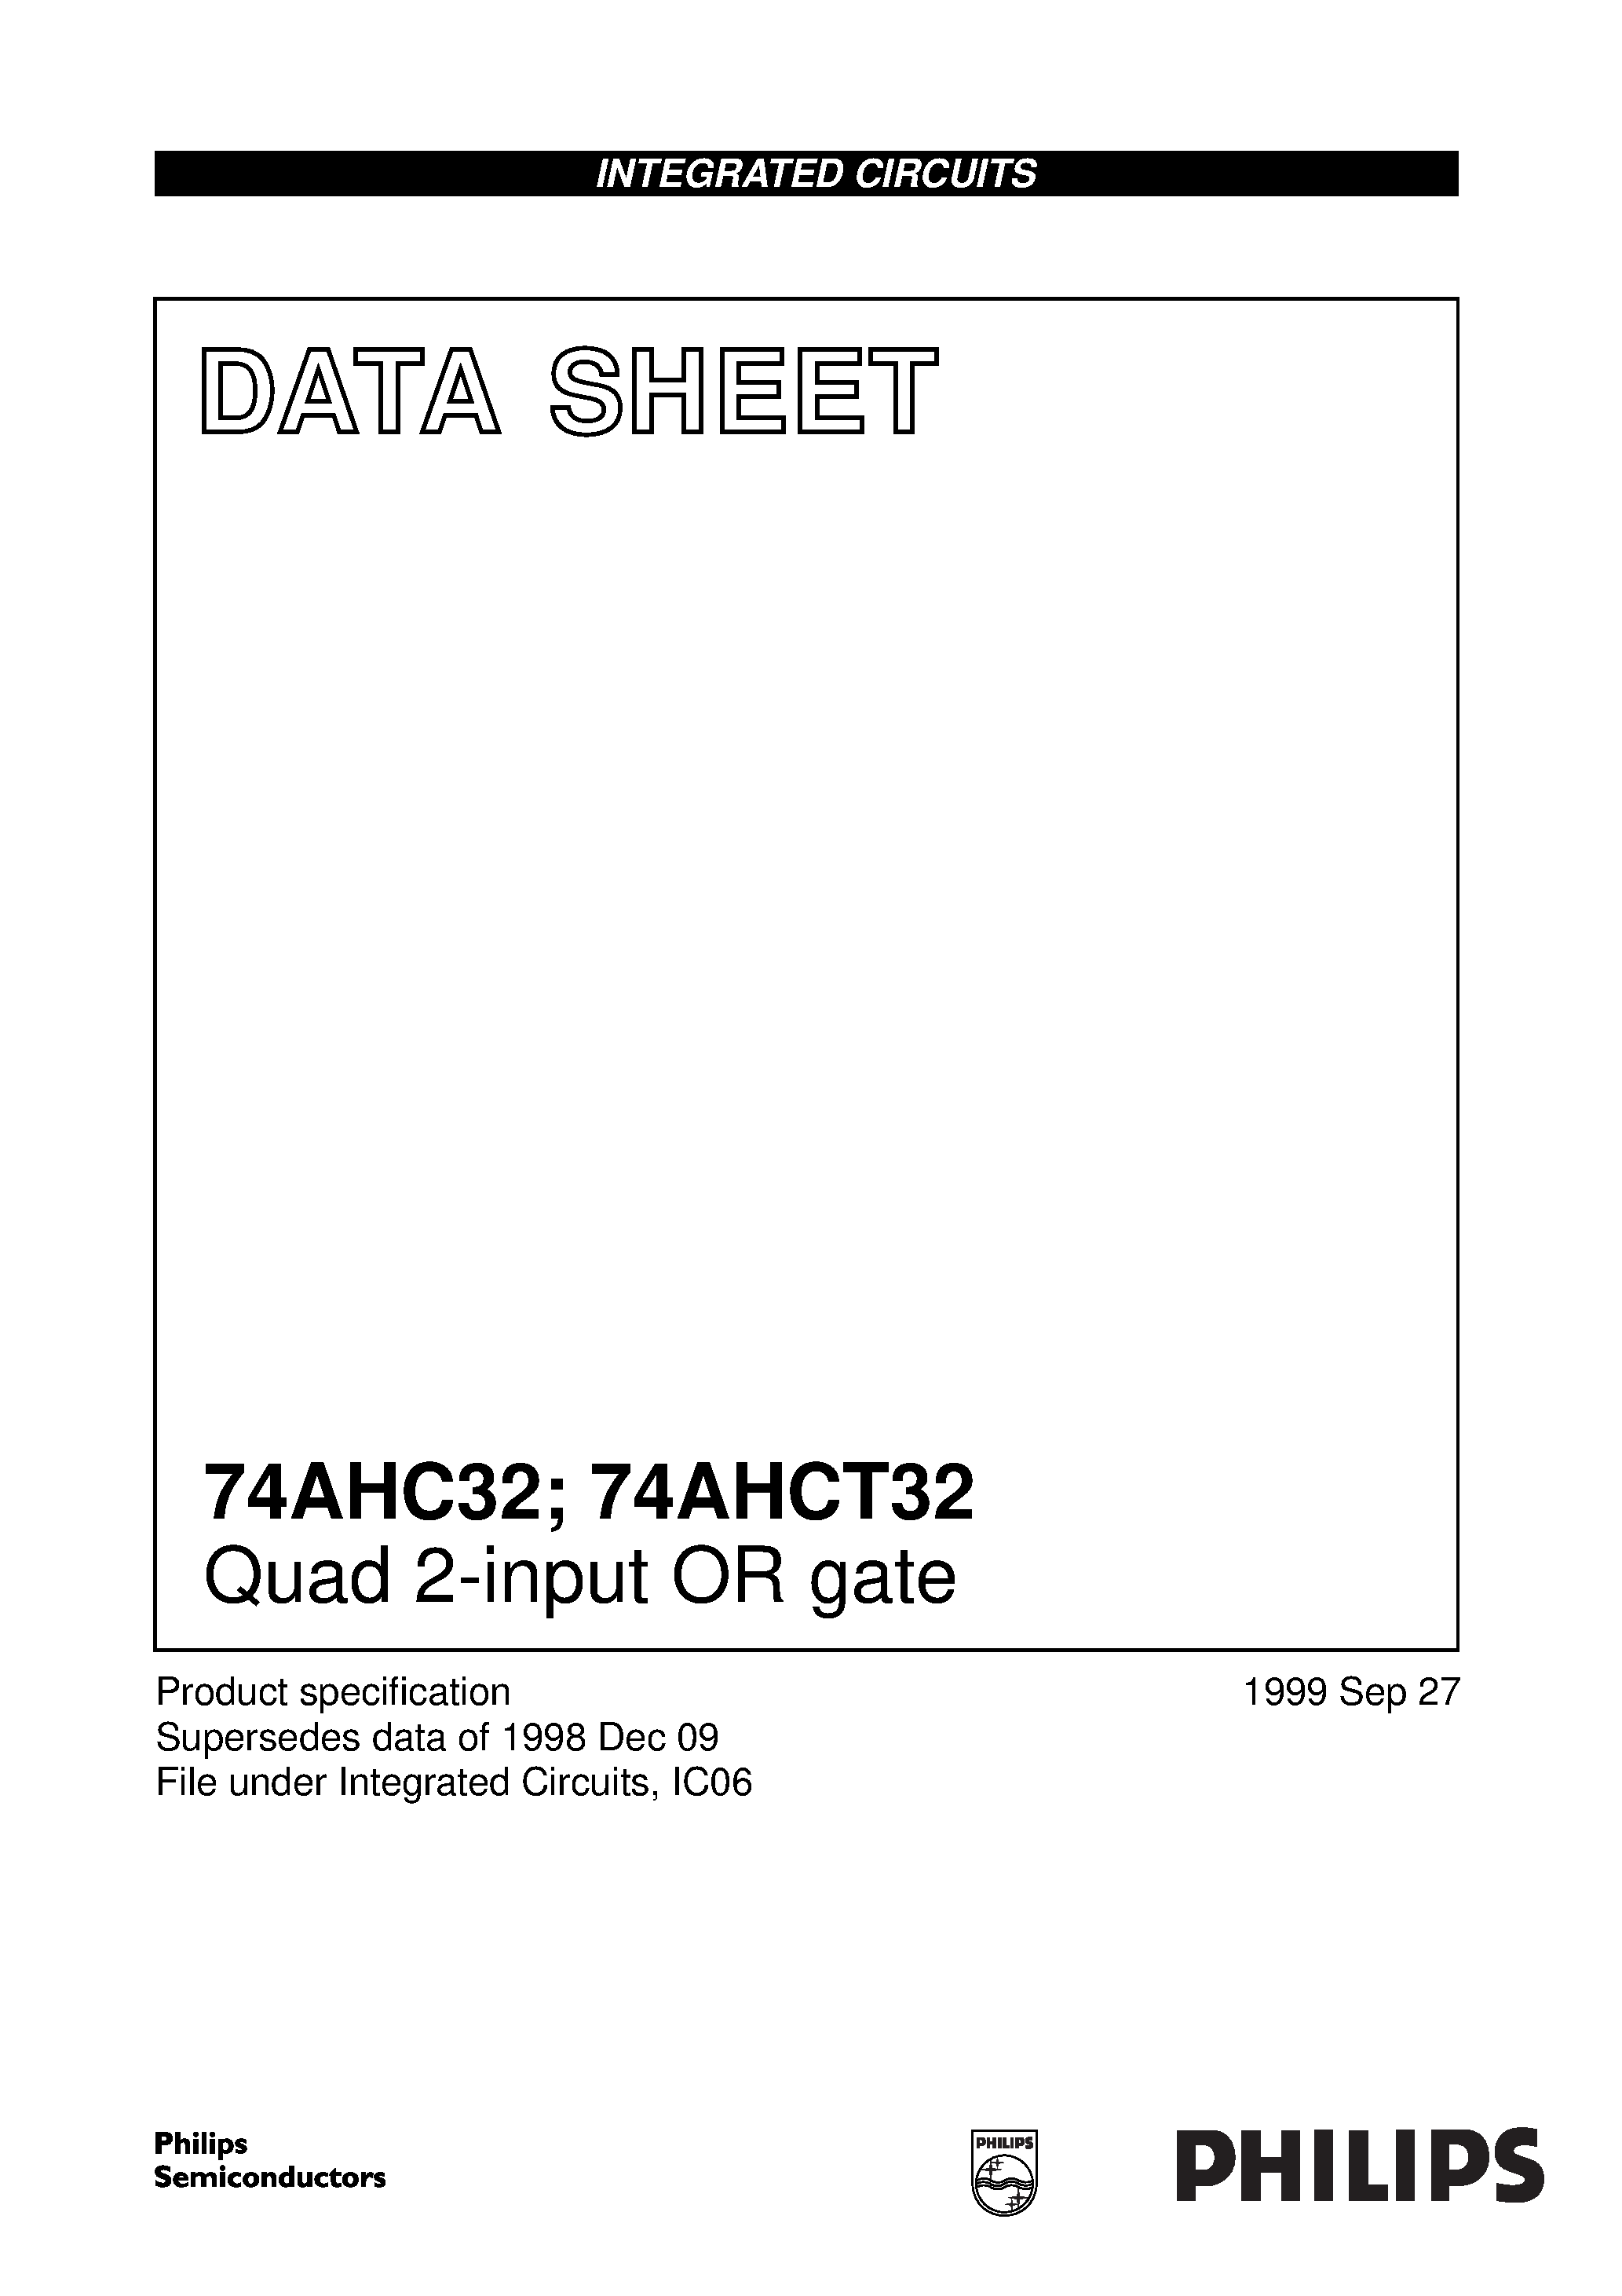 Даташит 74AHCT32PW - Quad 2-input OR gate страница 1